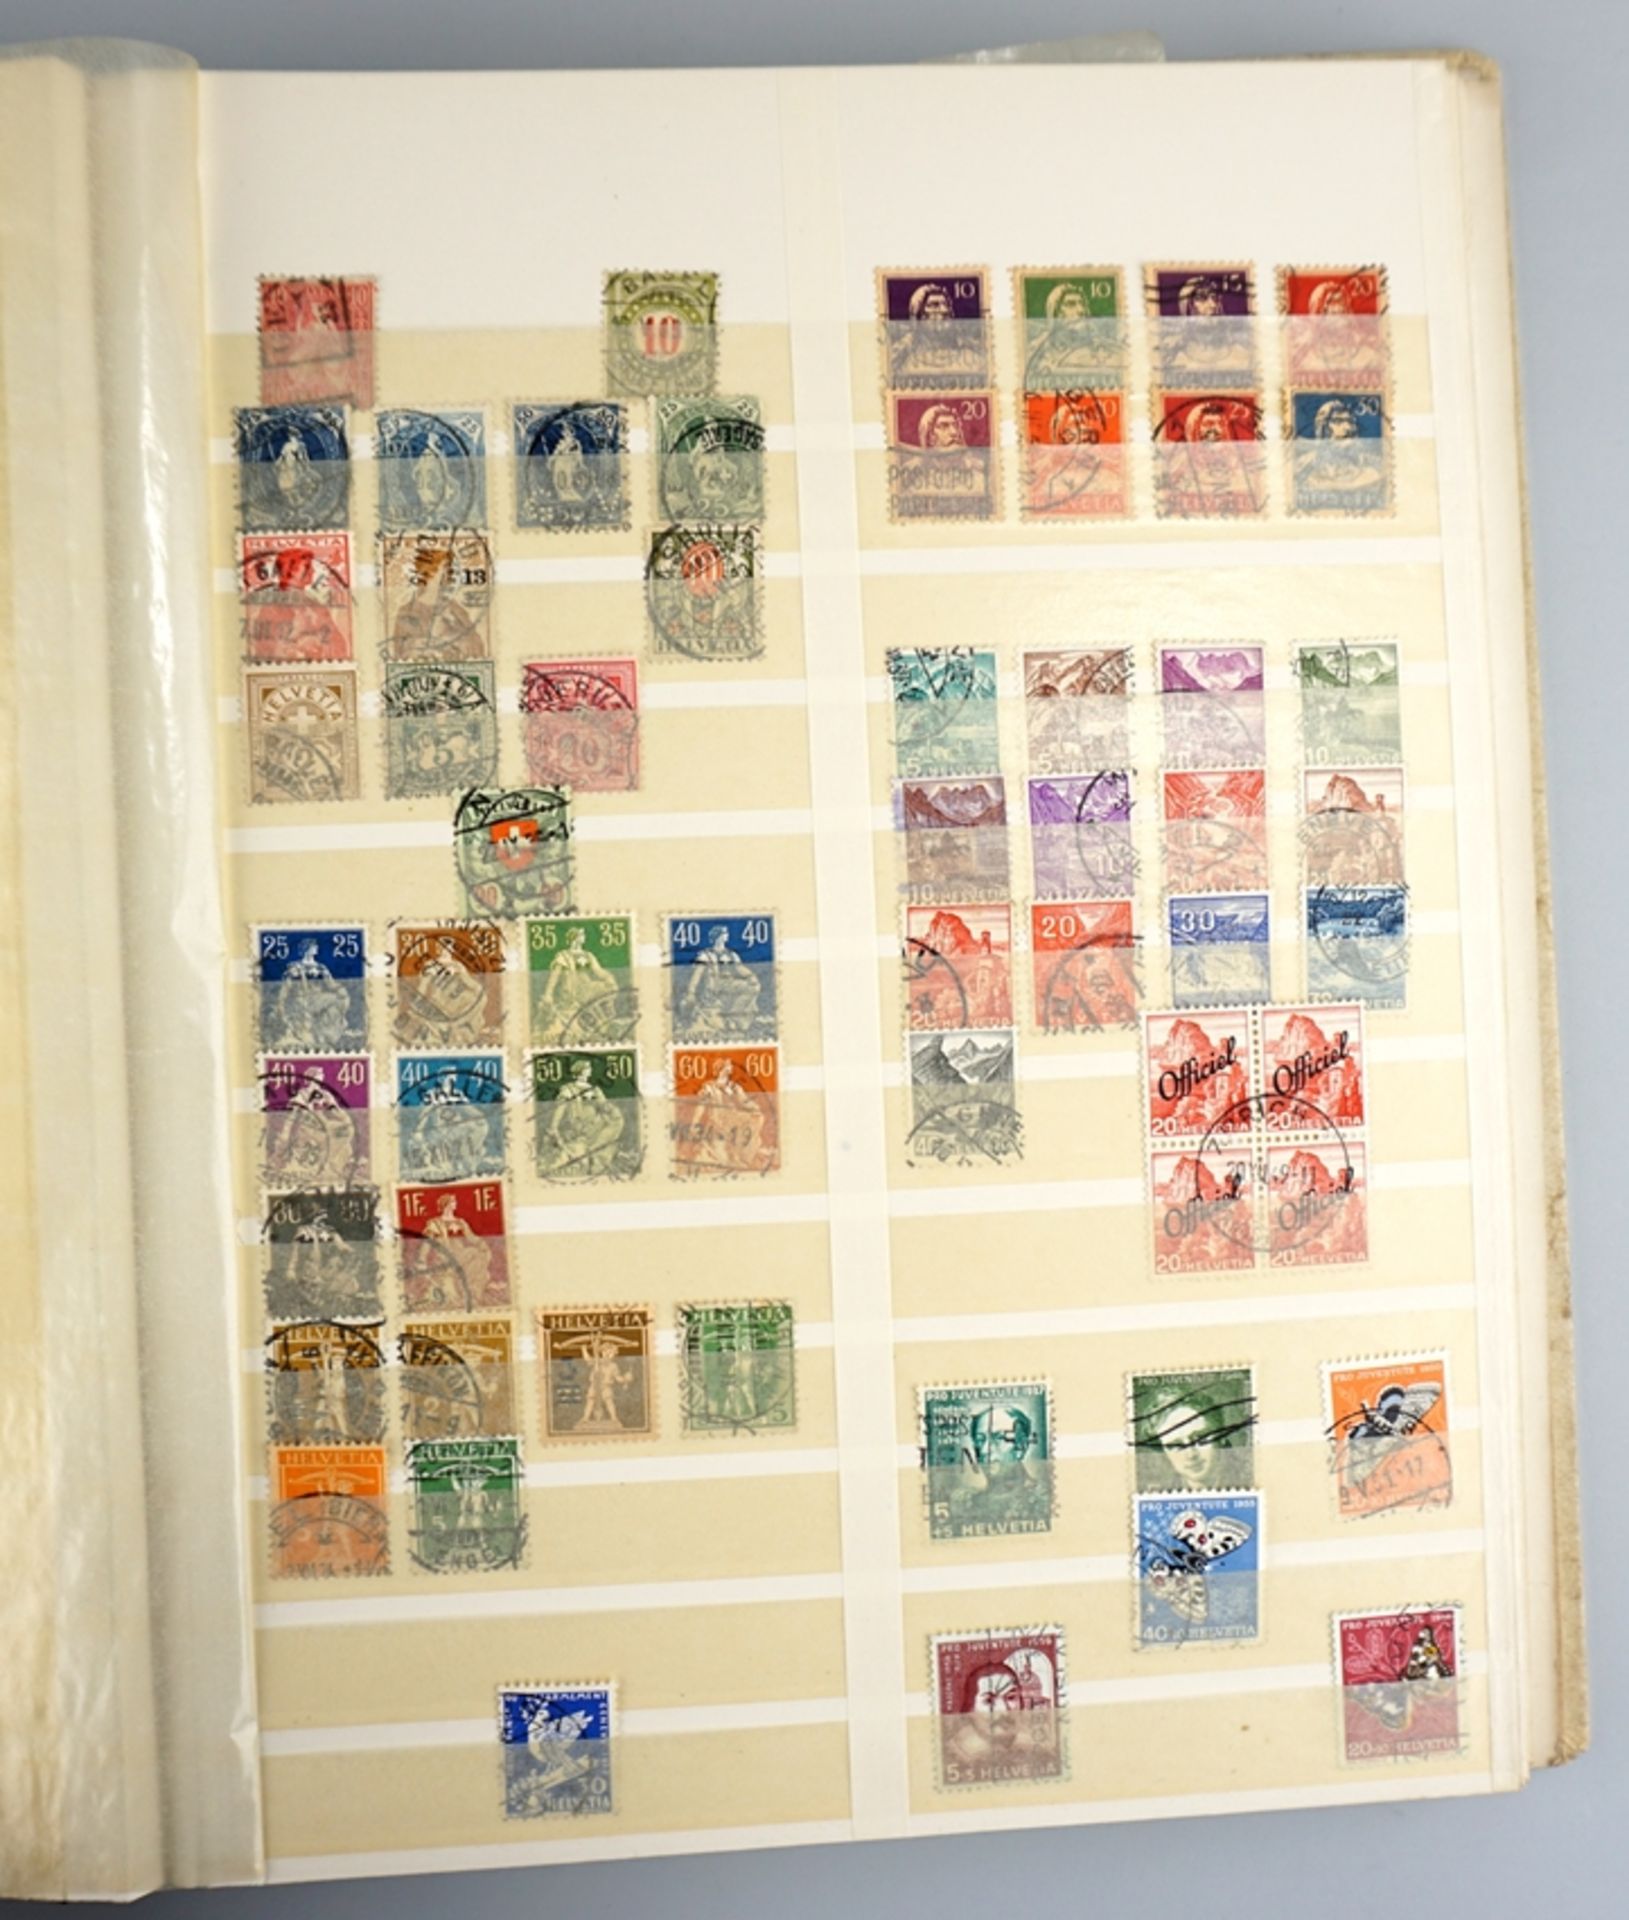 1 Album Briefmarken, Europa, Italien, Monaco, Portugal, Polen, San Marino, Spanien, Schweiz, Ungarn - Bild 3 aus 5